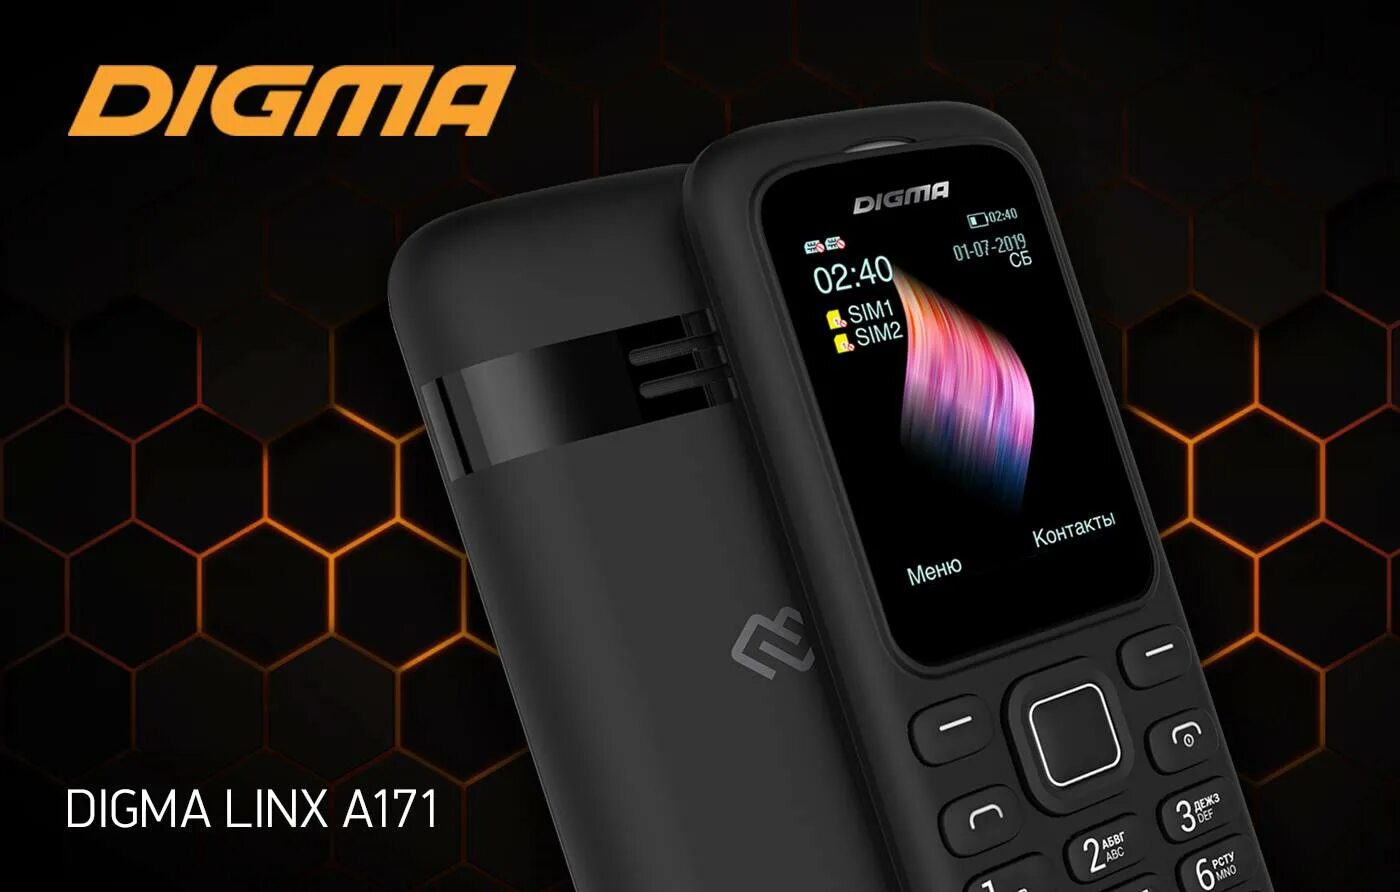 Digma linx c281. Телефон Digma Linx a171. Мобильный телефон Digma Linx c171 черный. Дигма смартфон 2019. Digma производитель.